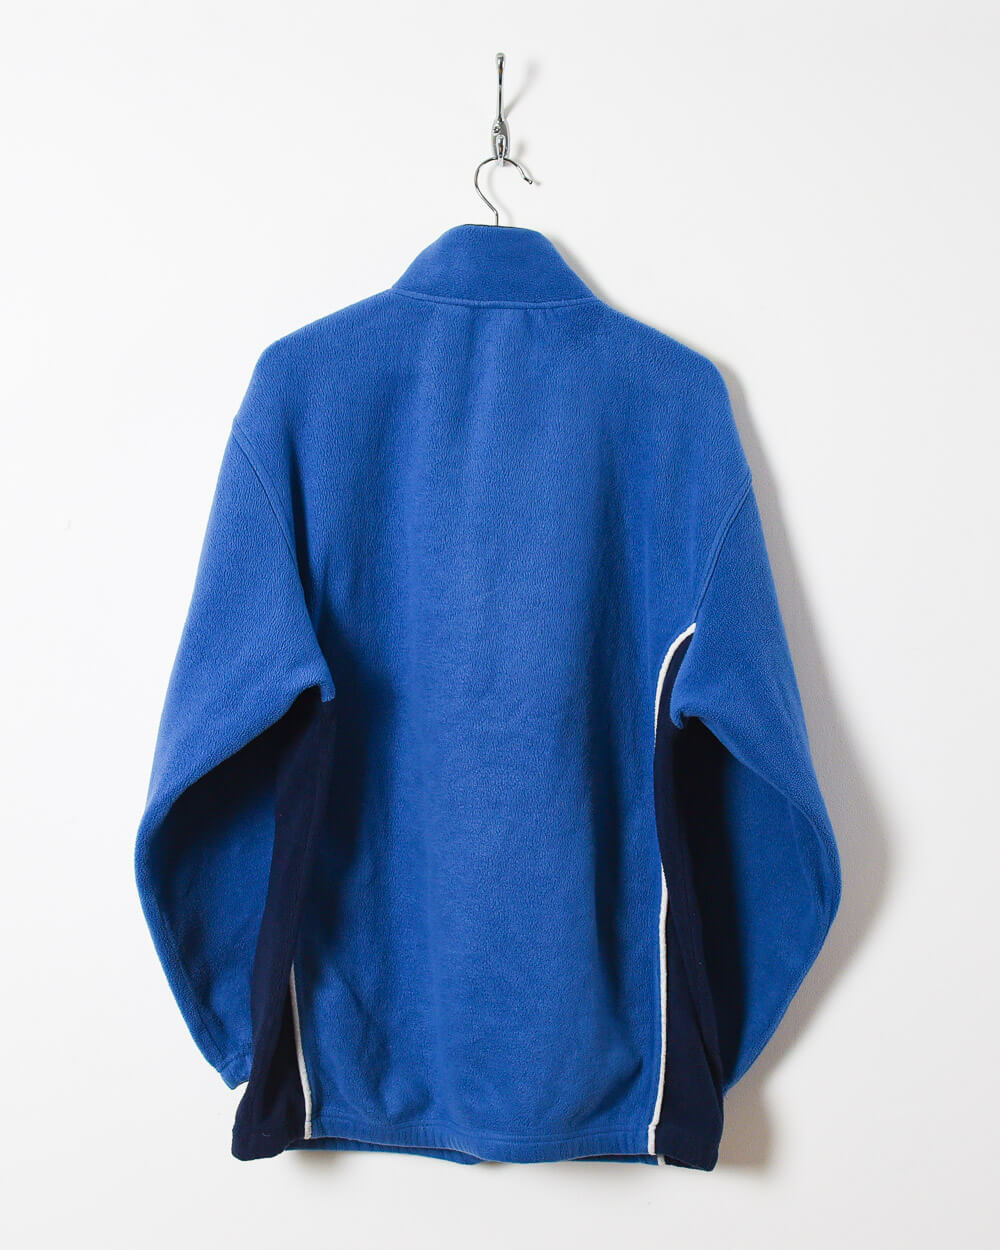 Blue Fila 1/4 Zip Fleece - Large